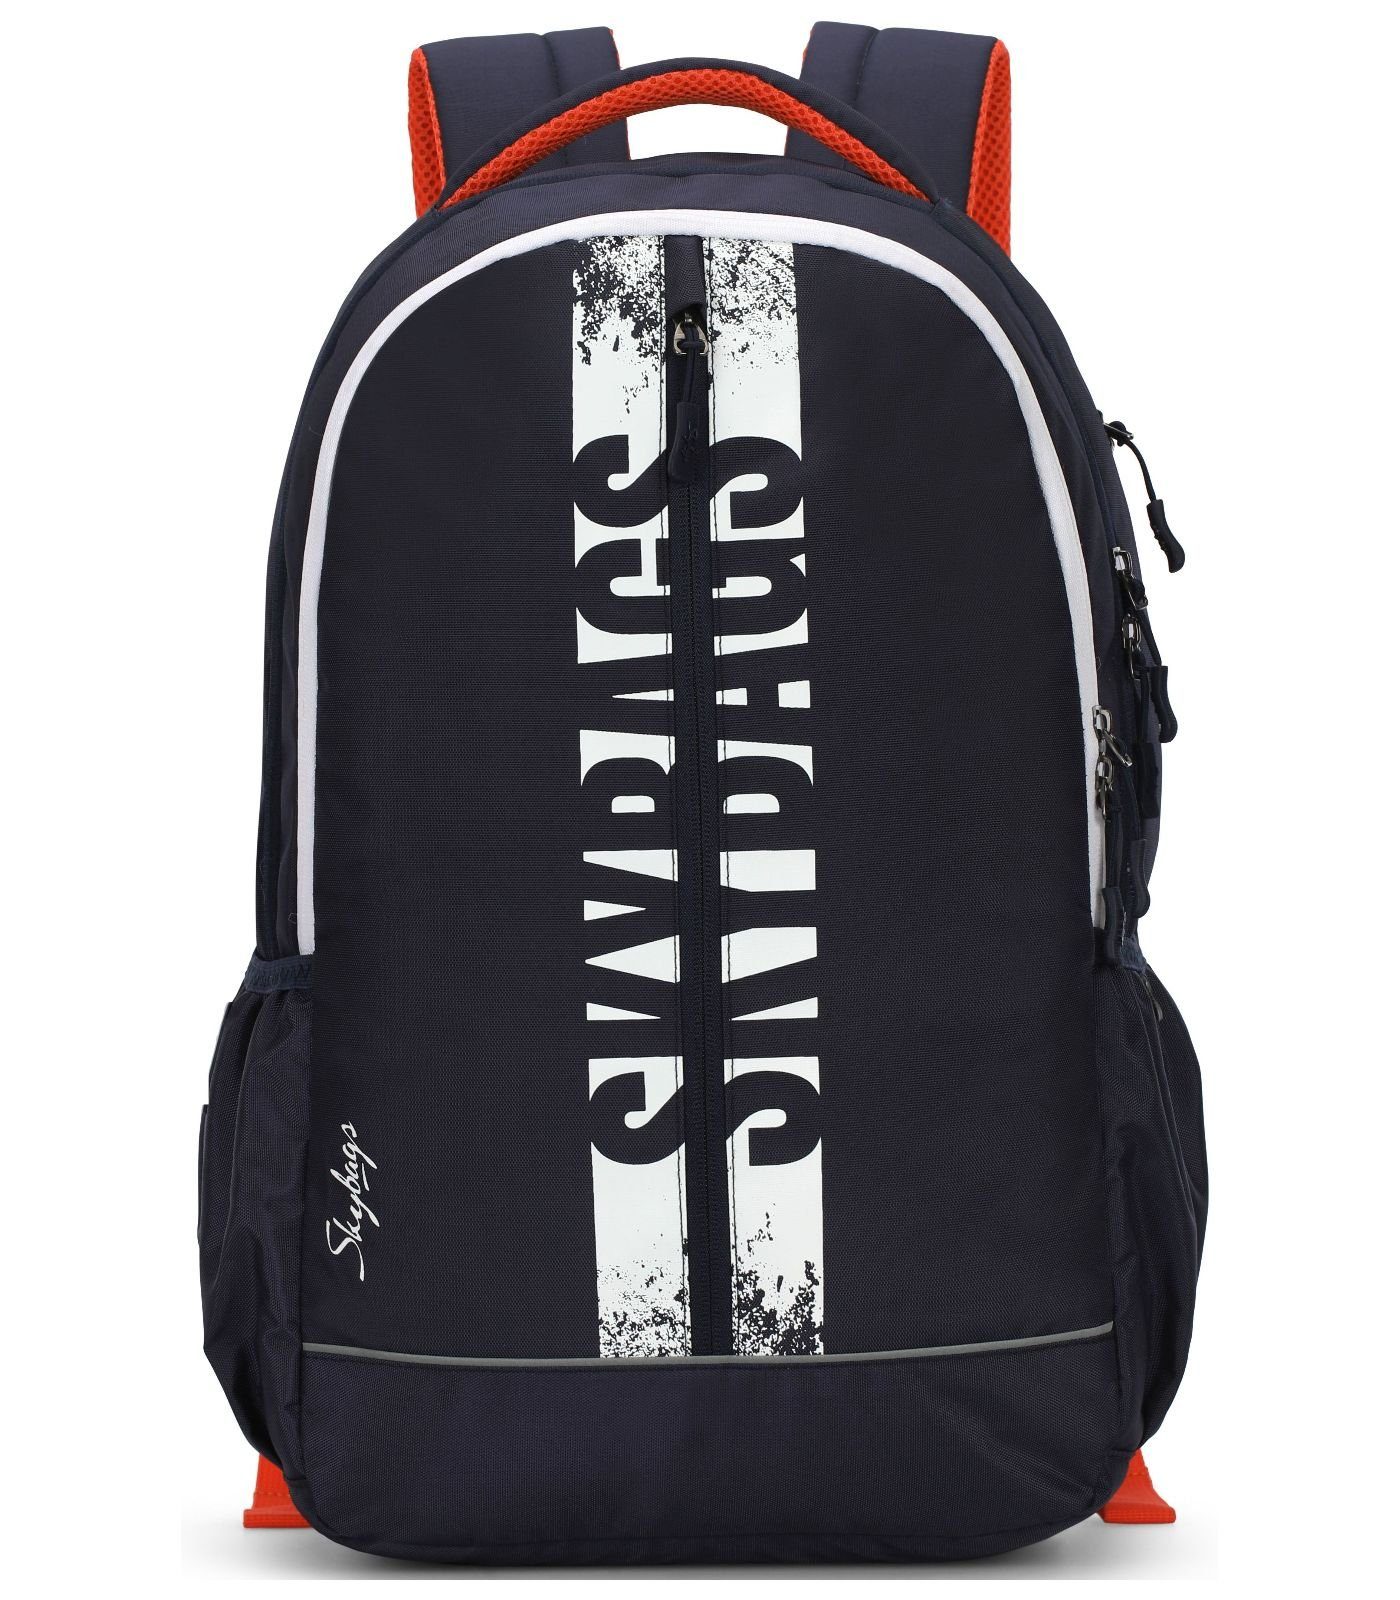 Skybags Rucksack Taschen Textil